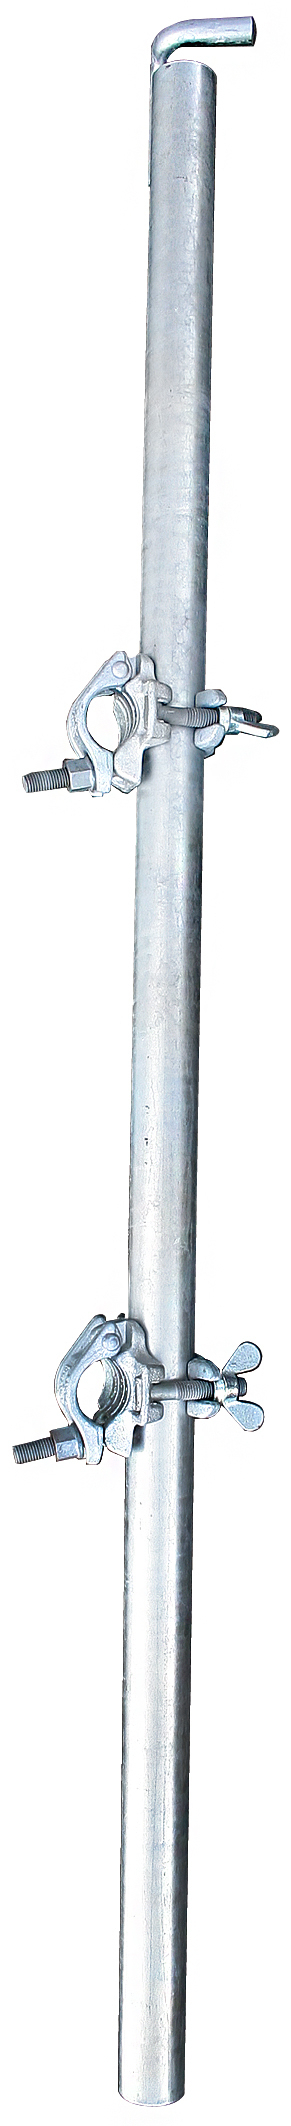 Stabilisierungs-Set 1,20 m (Stahl)